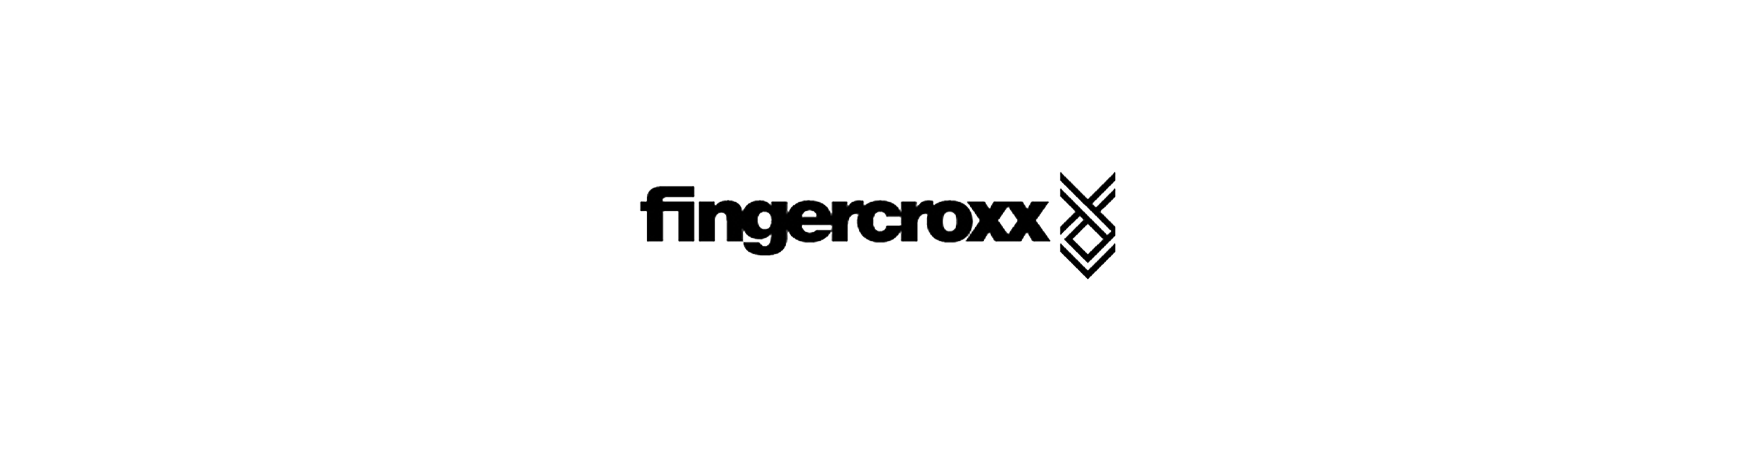 fingercroxx